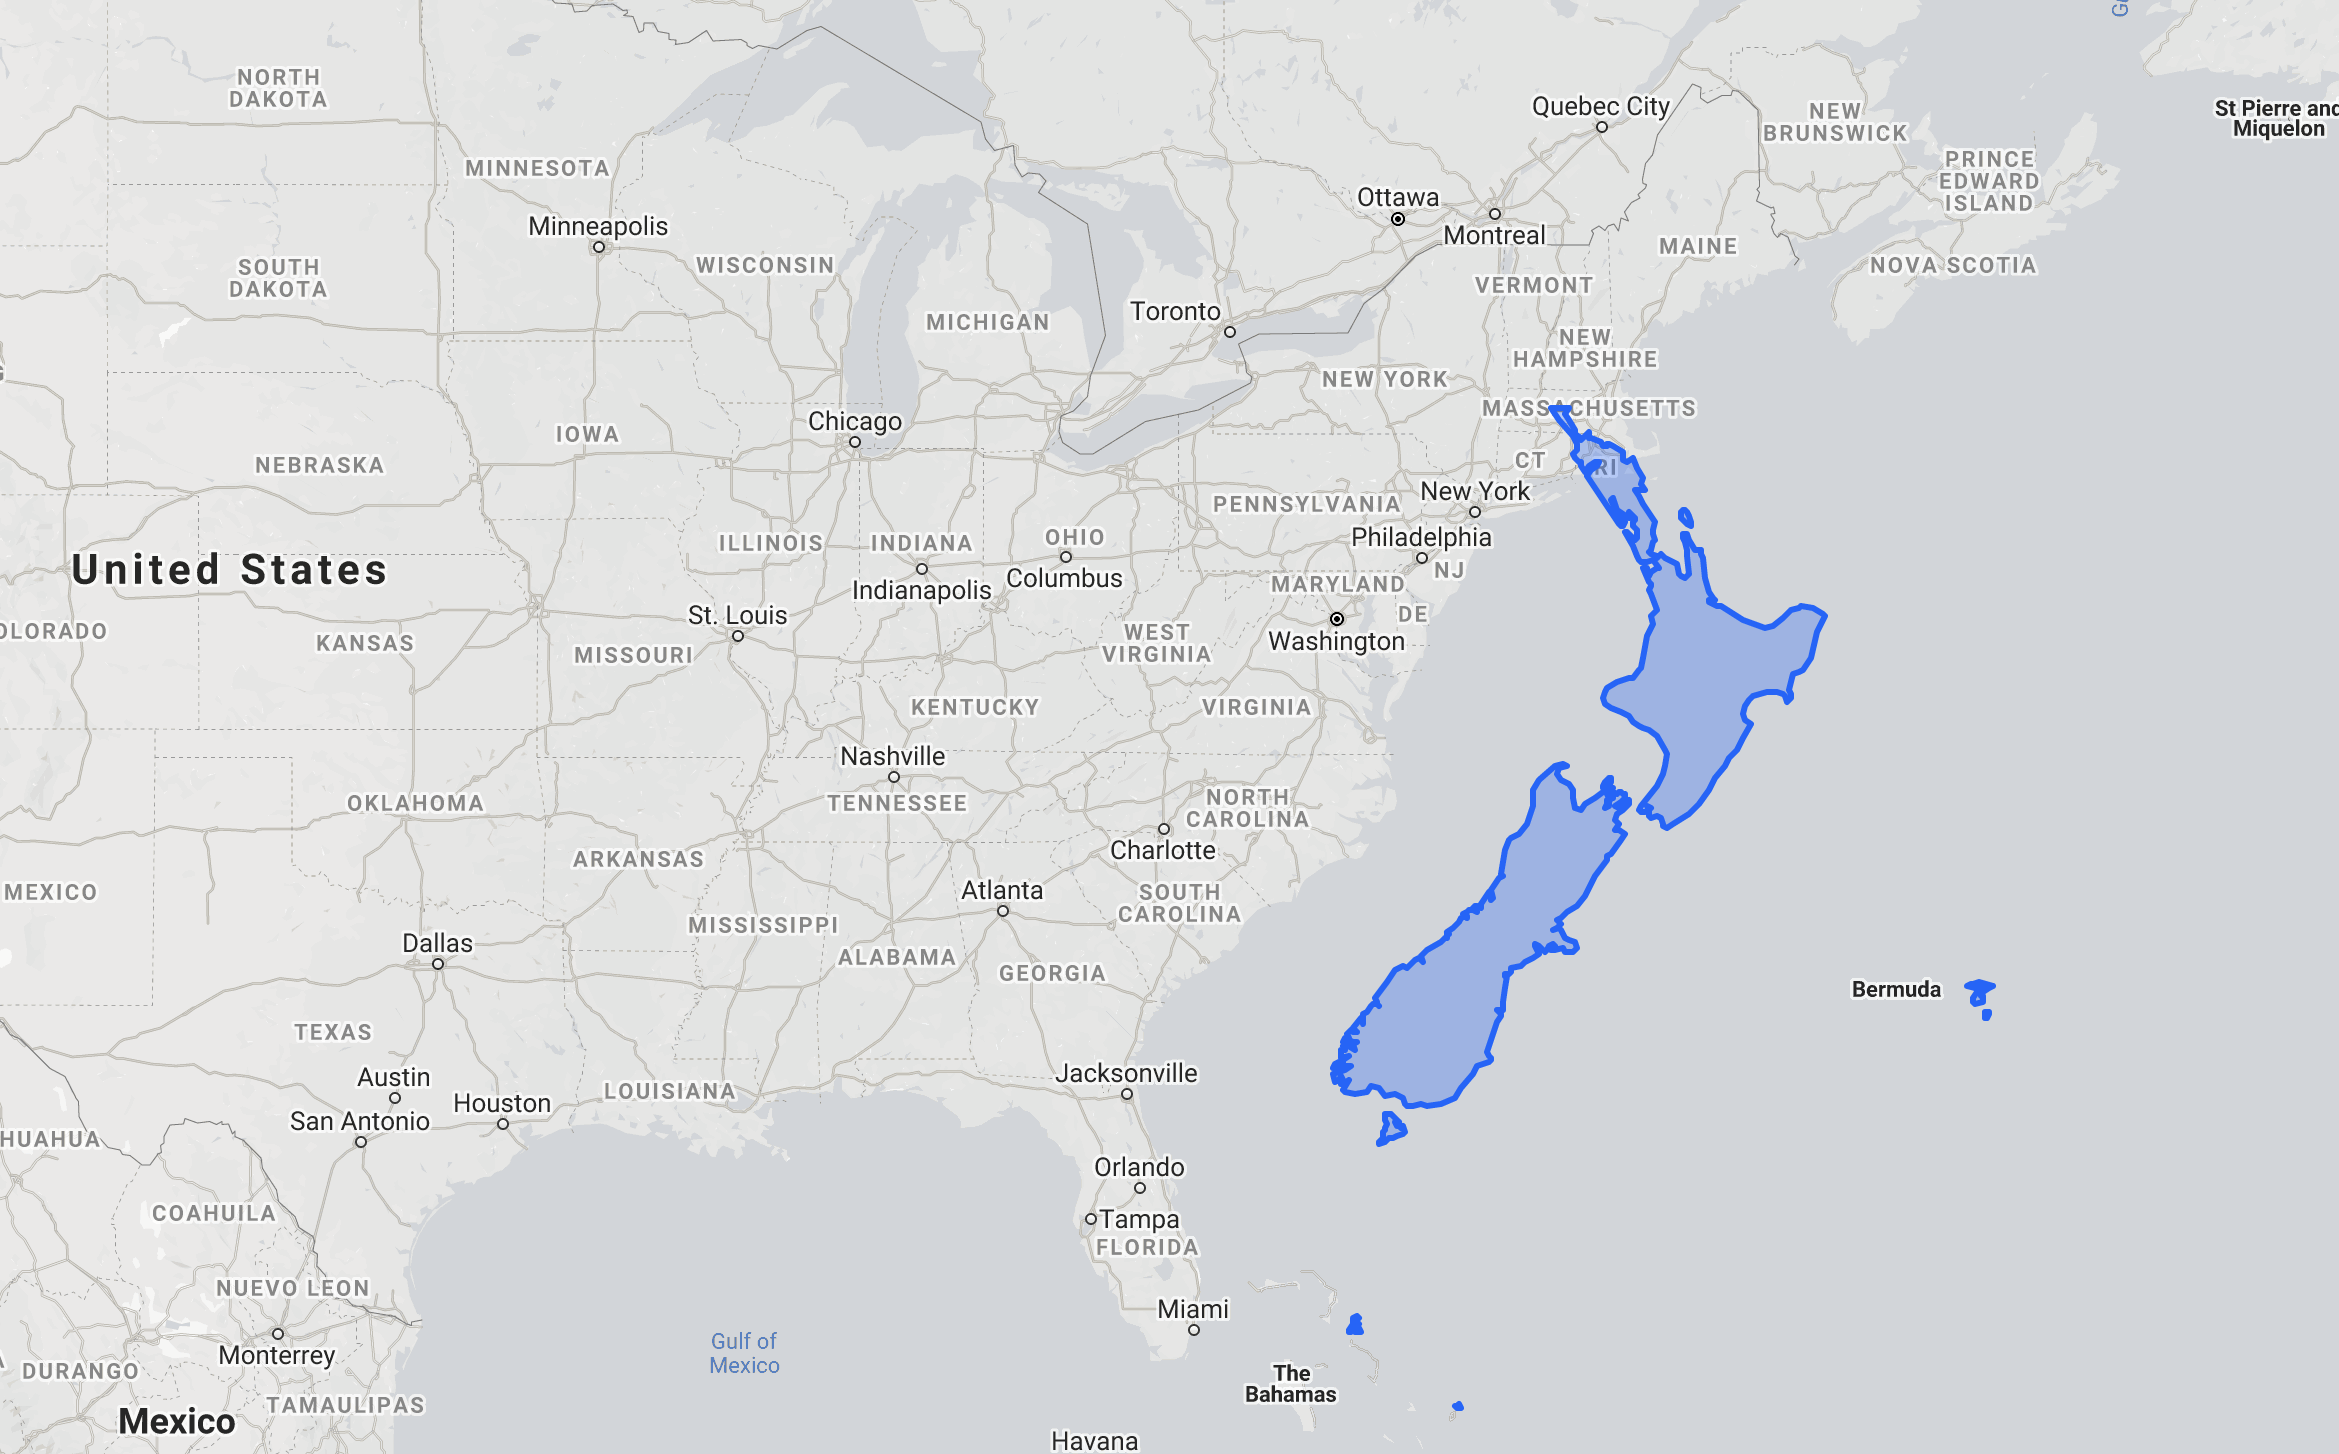 New Zealand vs. East Coast of United States